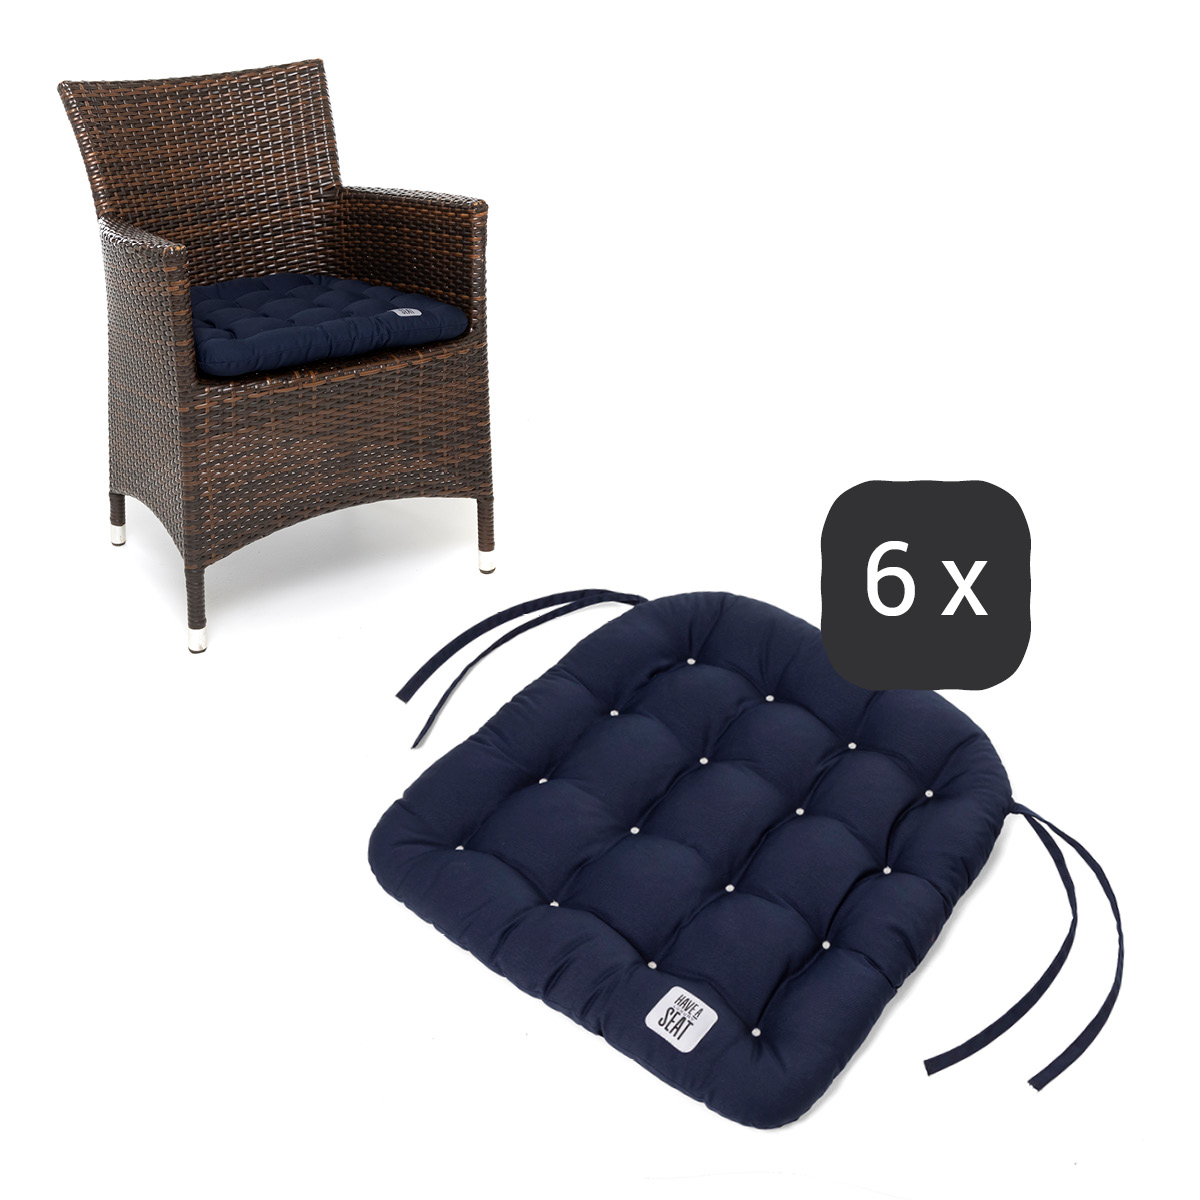 Sitzkissen für Rattanstühle 48x46 cm | Marine-Blau | 6er Set | Premium-Sitzkomfort | Indoor / Outdoor | waschbar bis 95°C | HAVE A SEAT Living